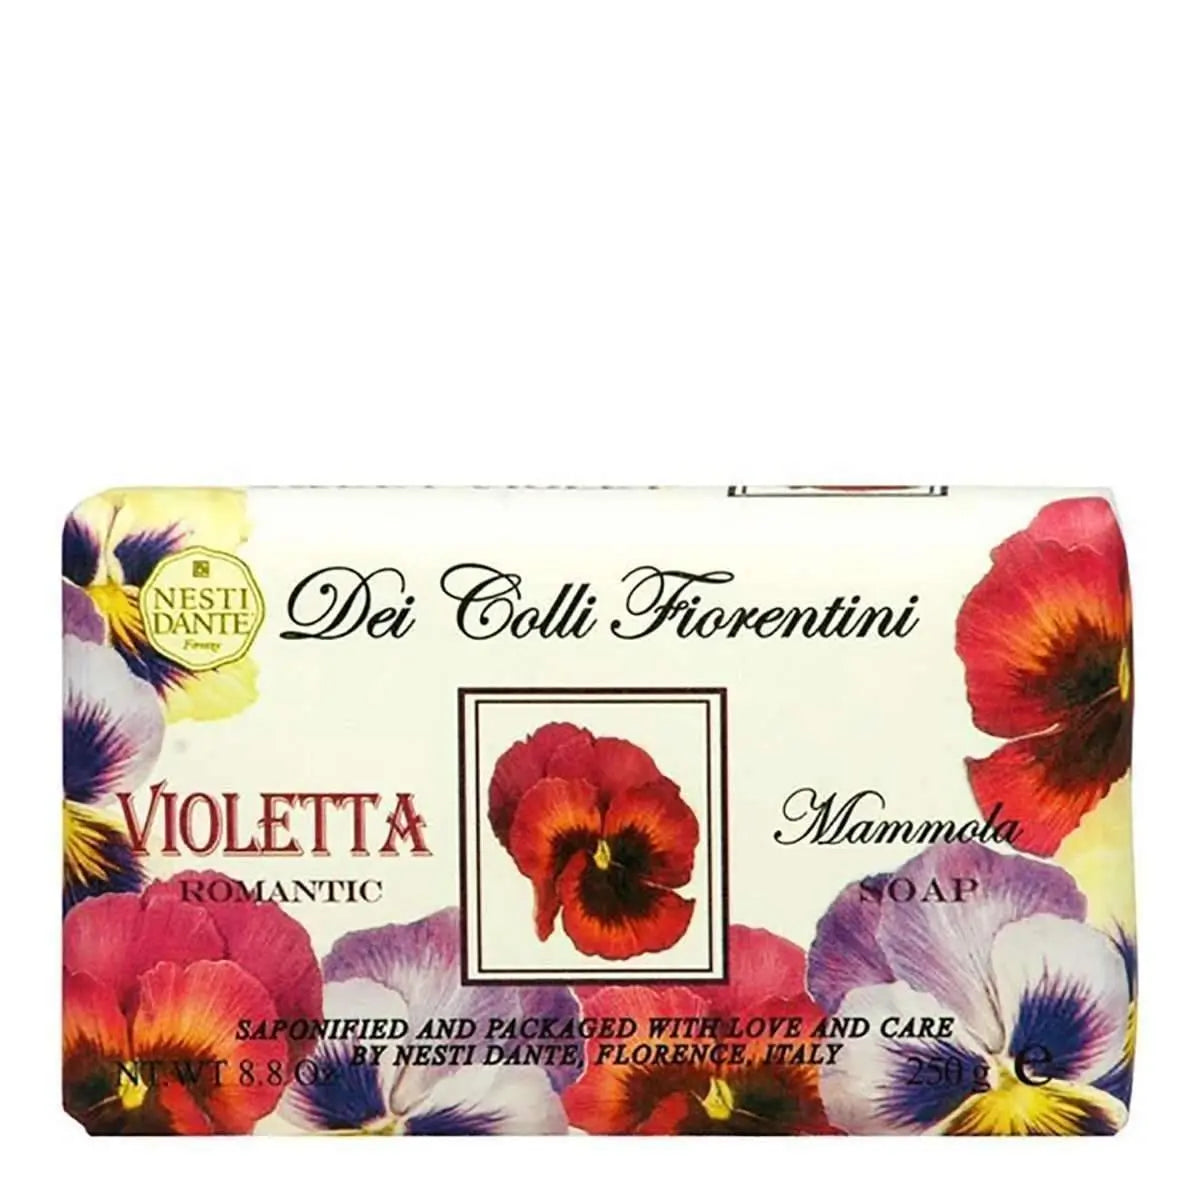 Nesti Dante Dei Colli Florentini (Violetta) 250g % | product_vendor%